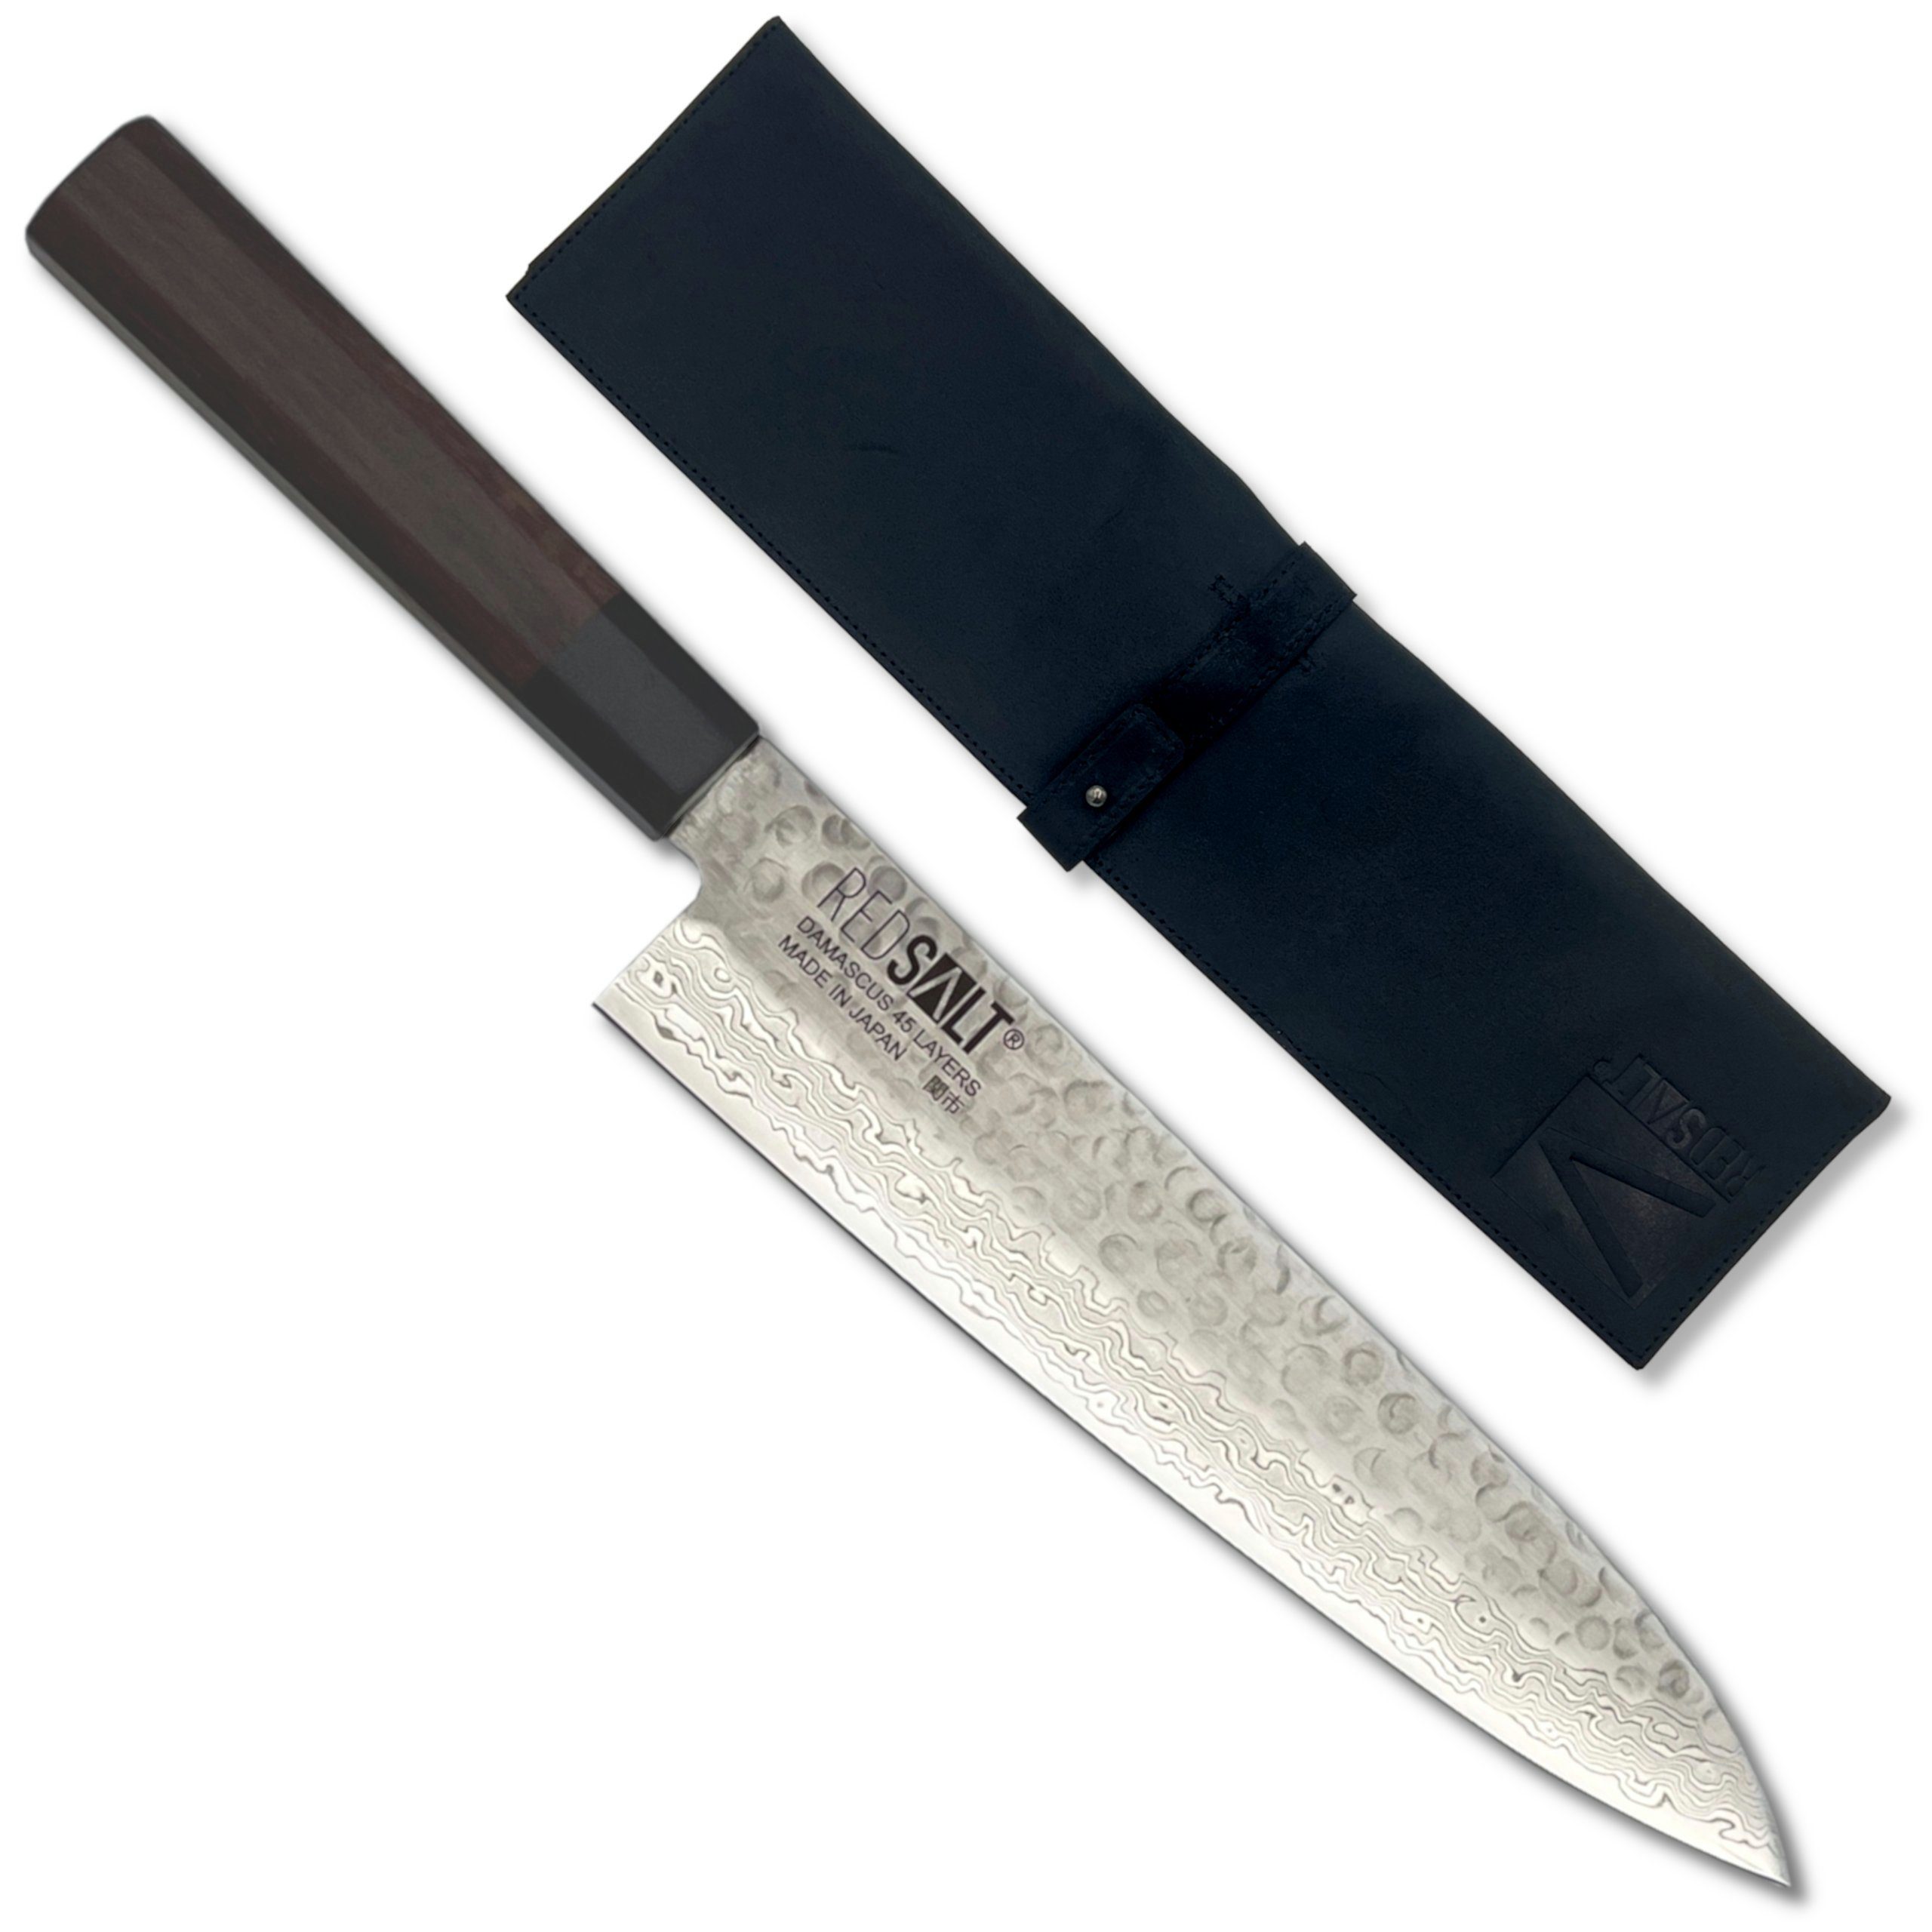 REDSALT® Damastmesser GYUTO 21cm Profi Küchenmesser mit Ledertasche & Klingenschutz, handgerfertigt, Made in Japan | Damastmesser